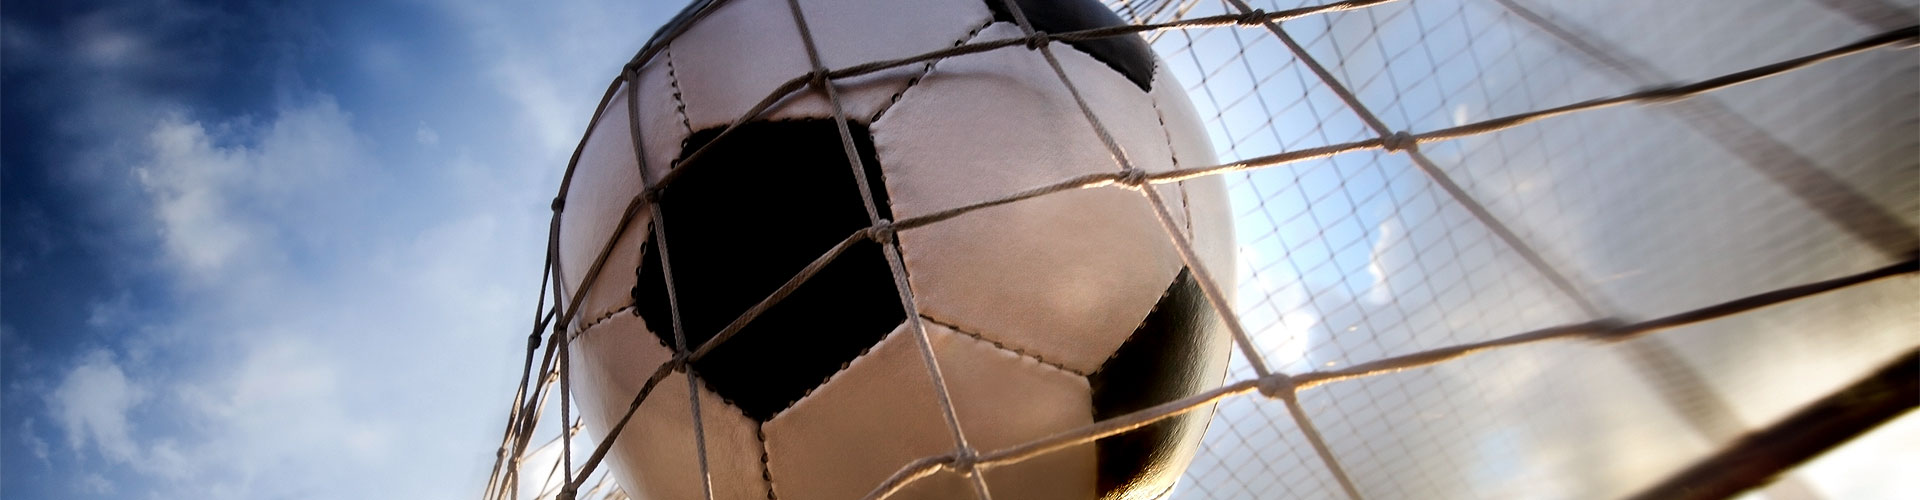 Ver la Eurocopa 2020 de fútbol en vivo en Espinosilla de San Bartolomé